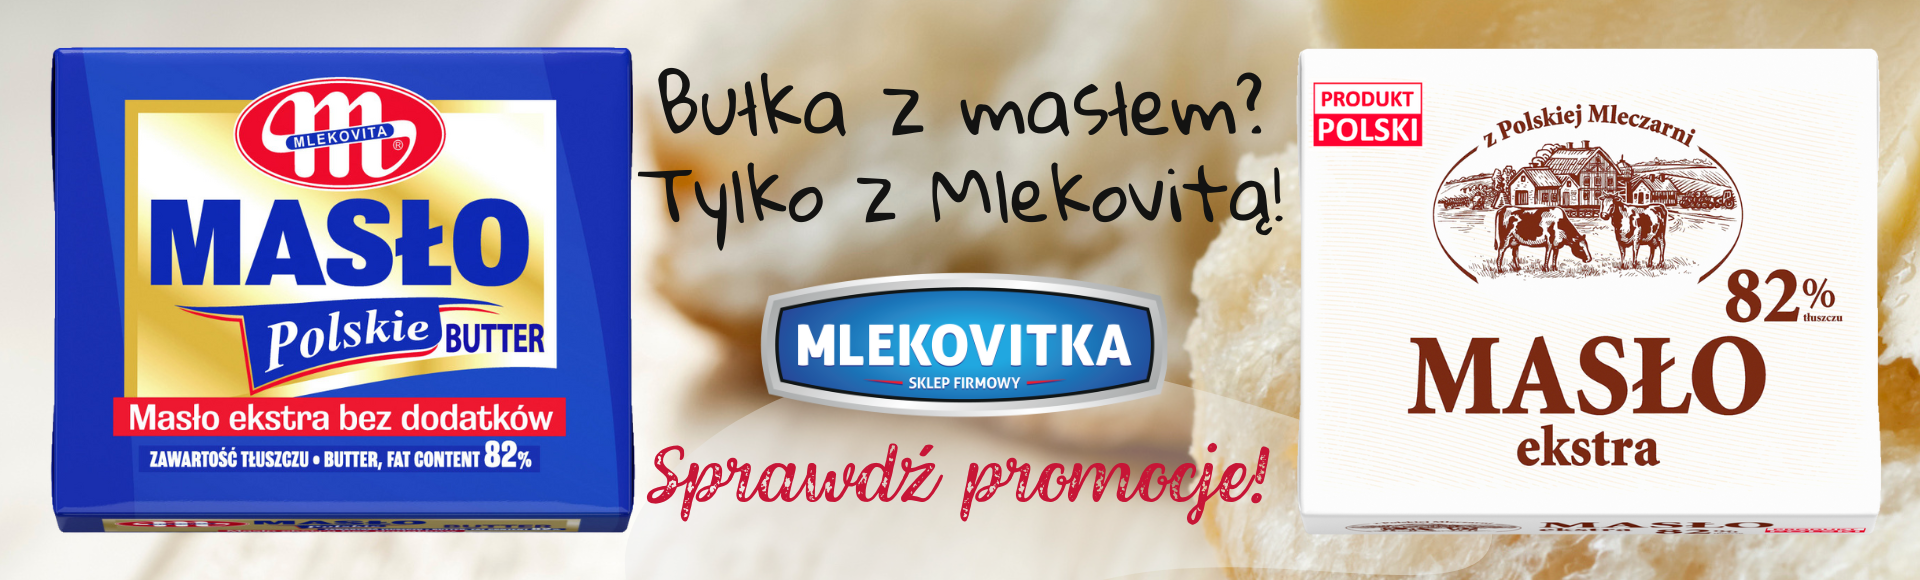 Promocje Mlekovitka.pl